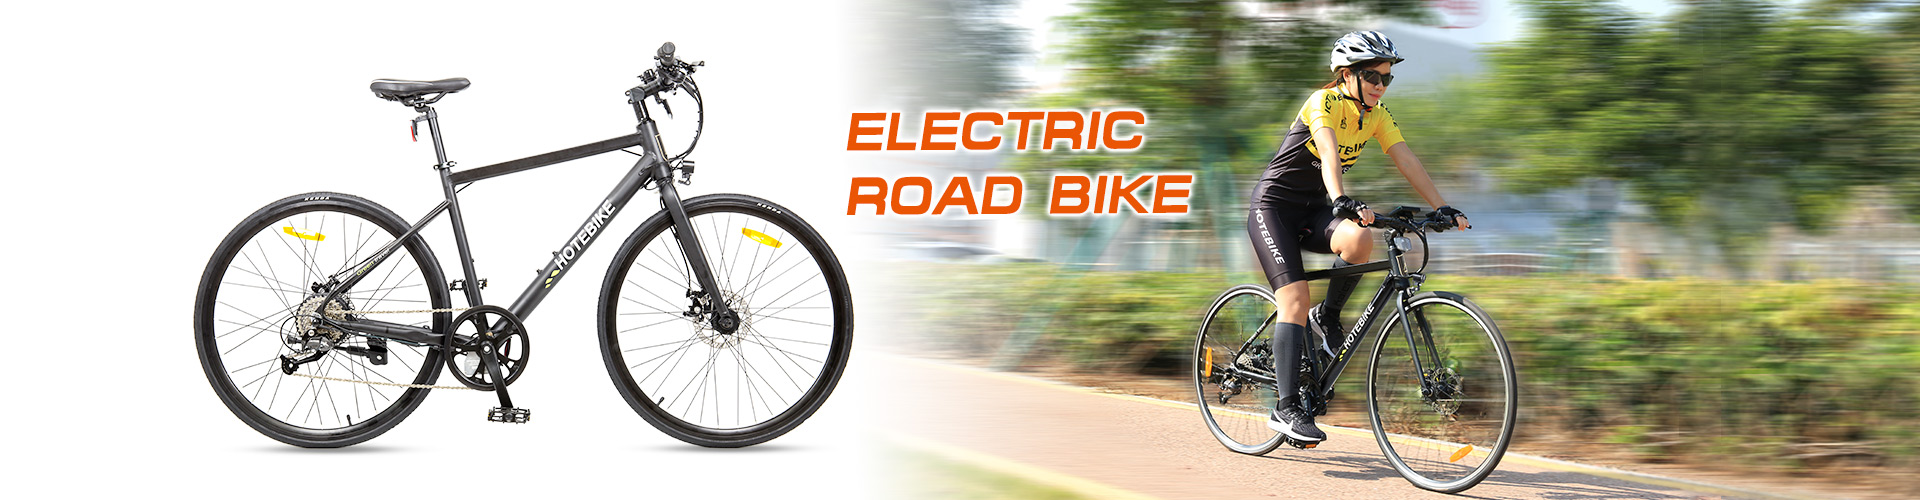 electric road bike